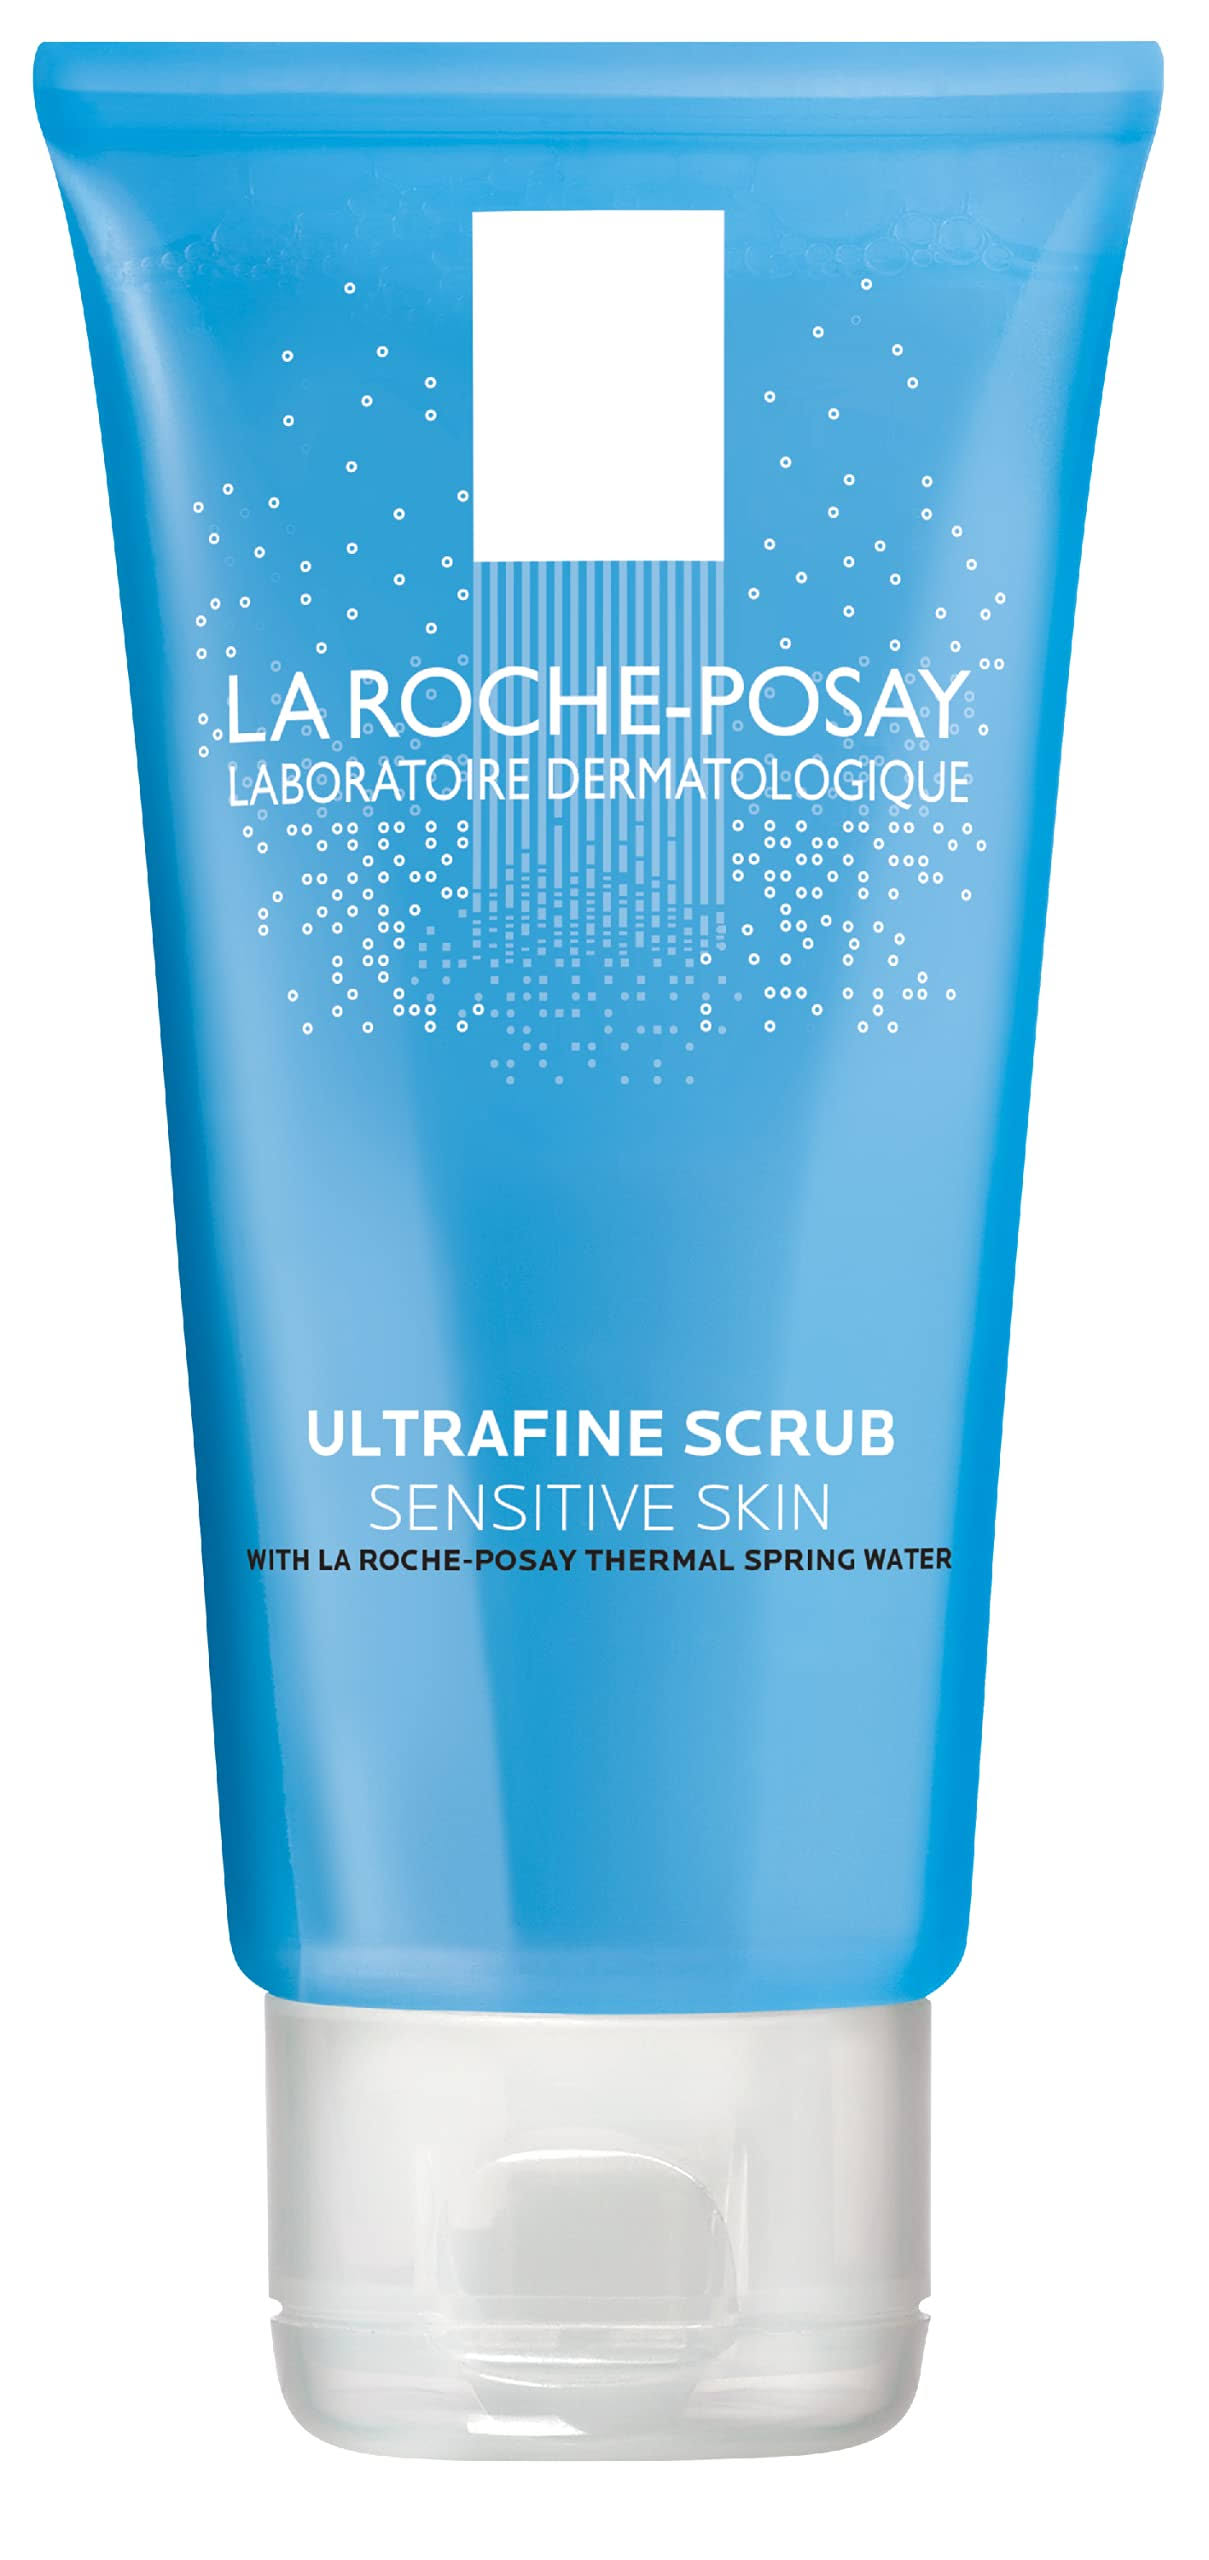 La Roche-Posay Ultra Fine Scrub - Sensitive Skin, 50ml